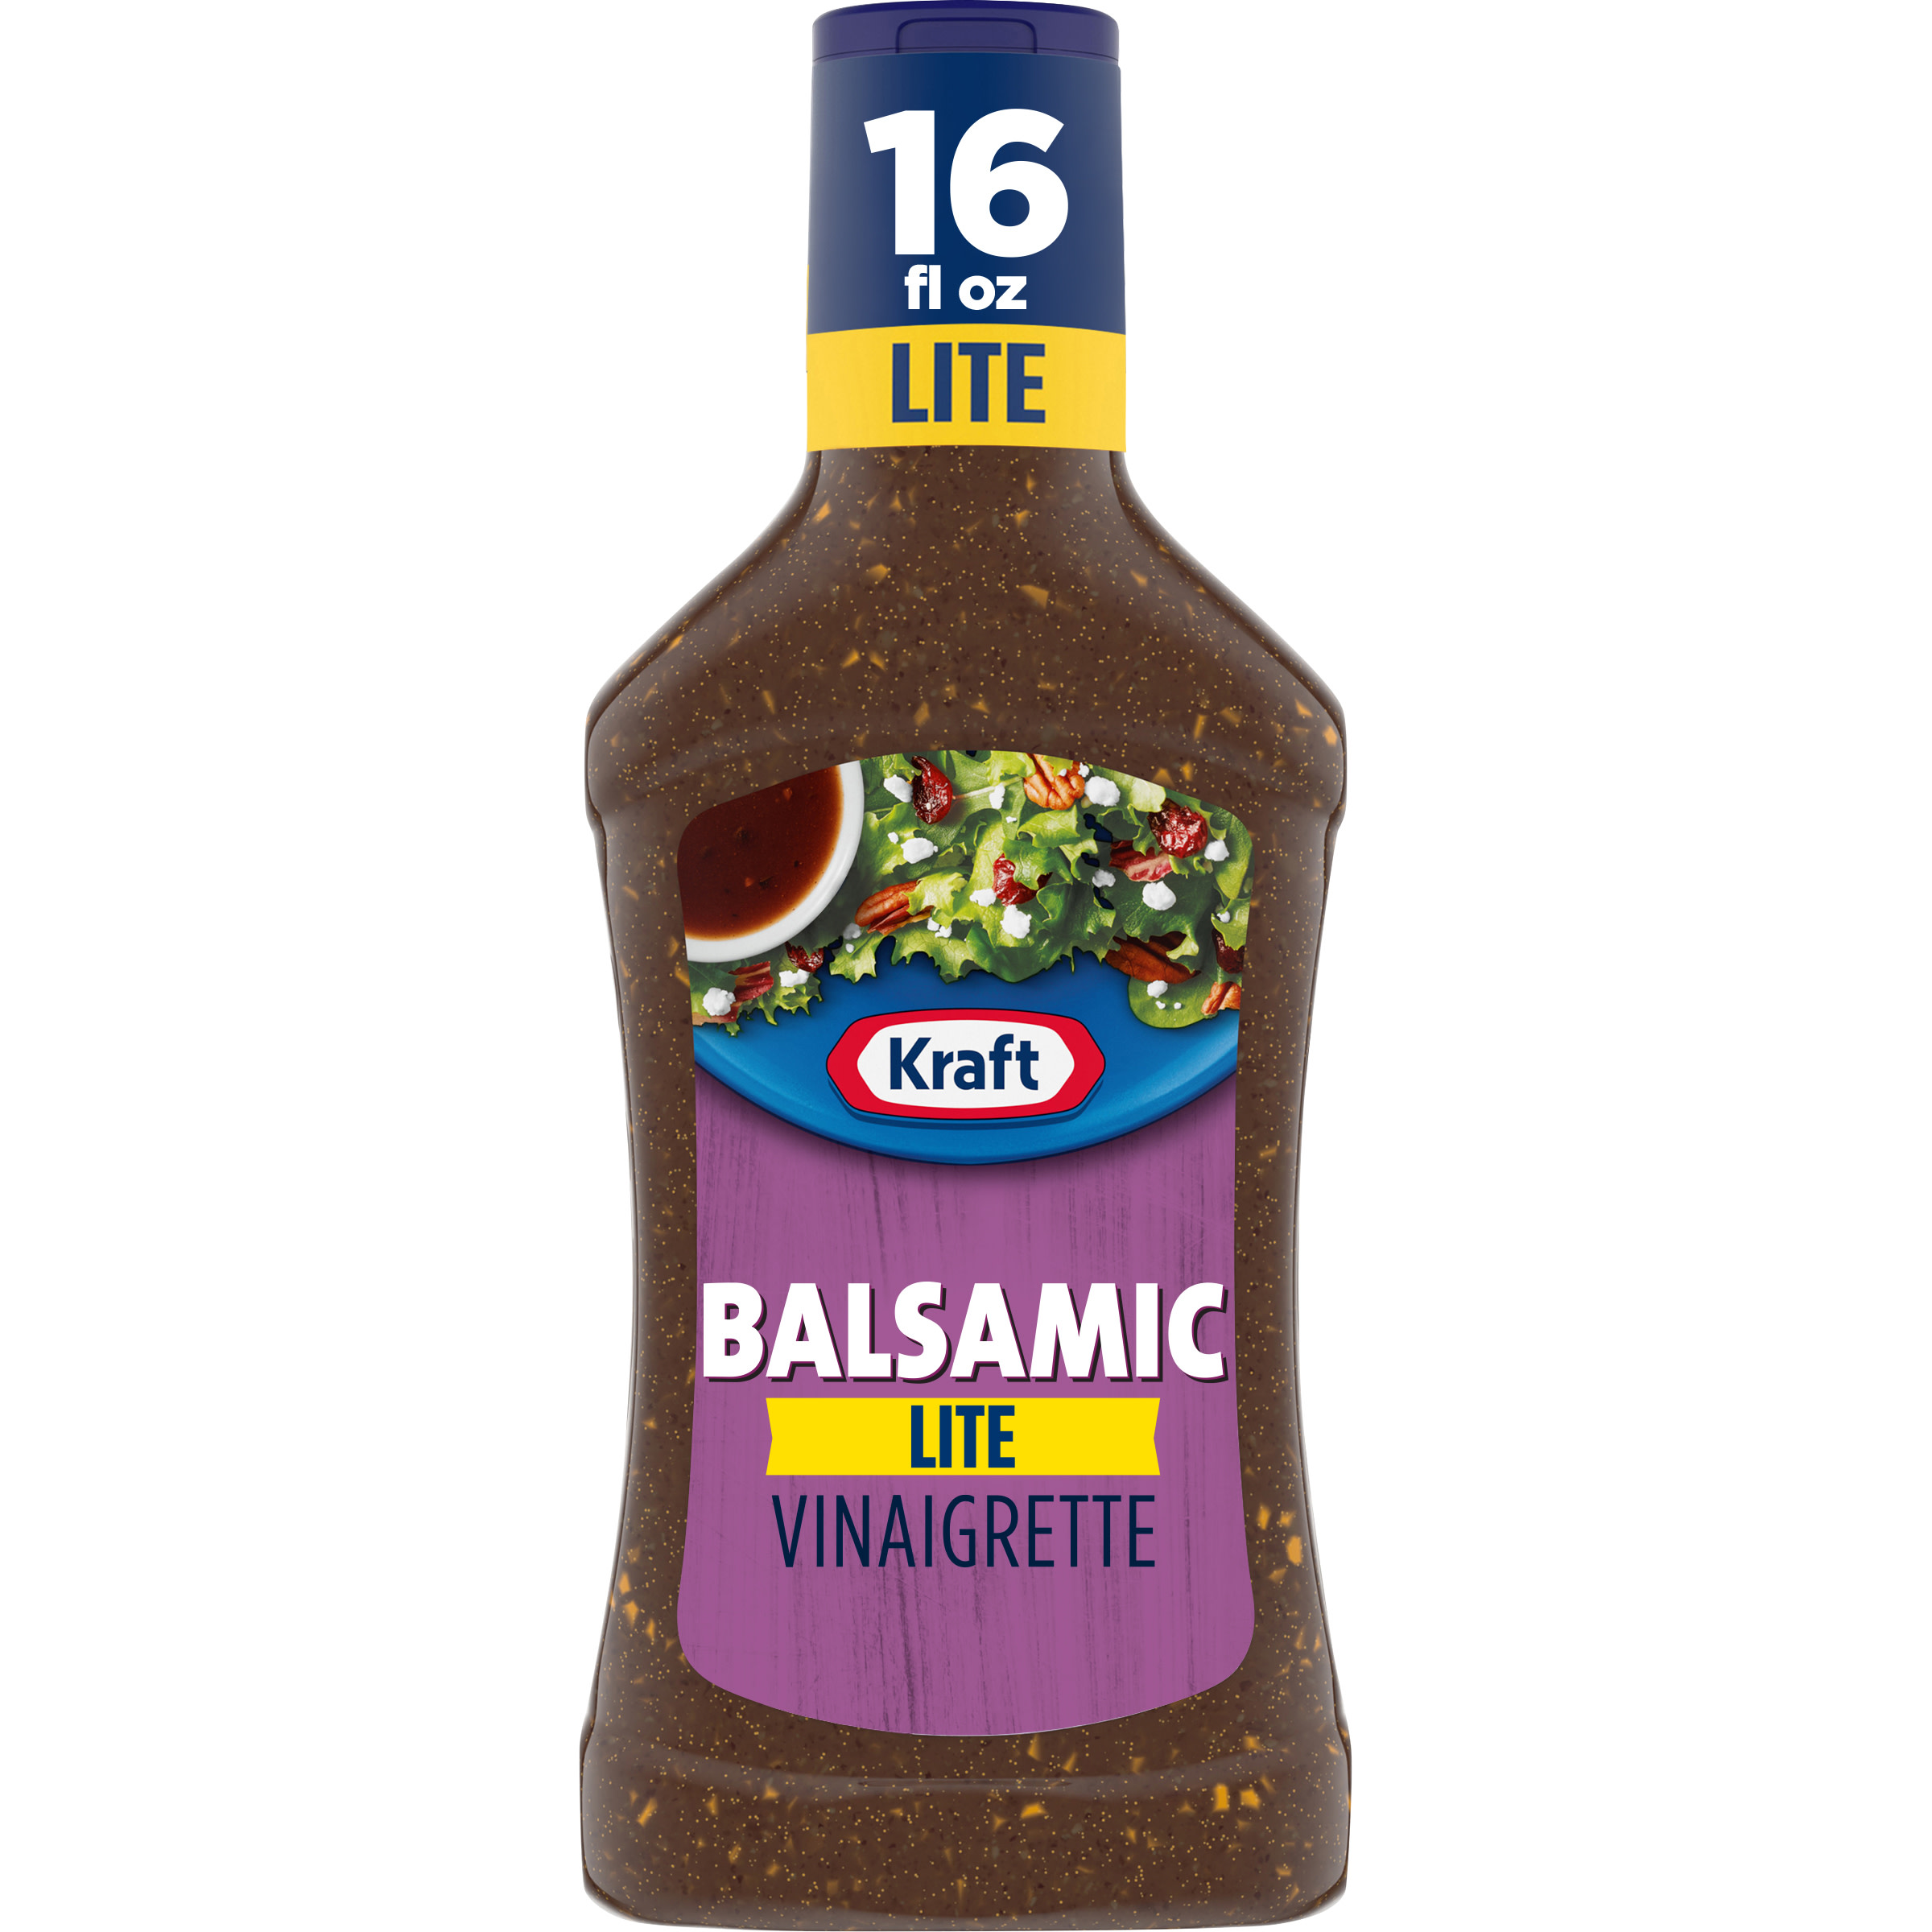 Kraft Balsamic Vinaigrette Lite Salad Dressing, 16 fl oz Bottle - image 1 of 9